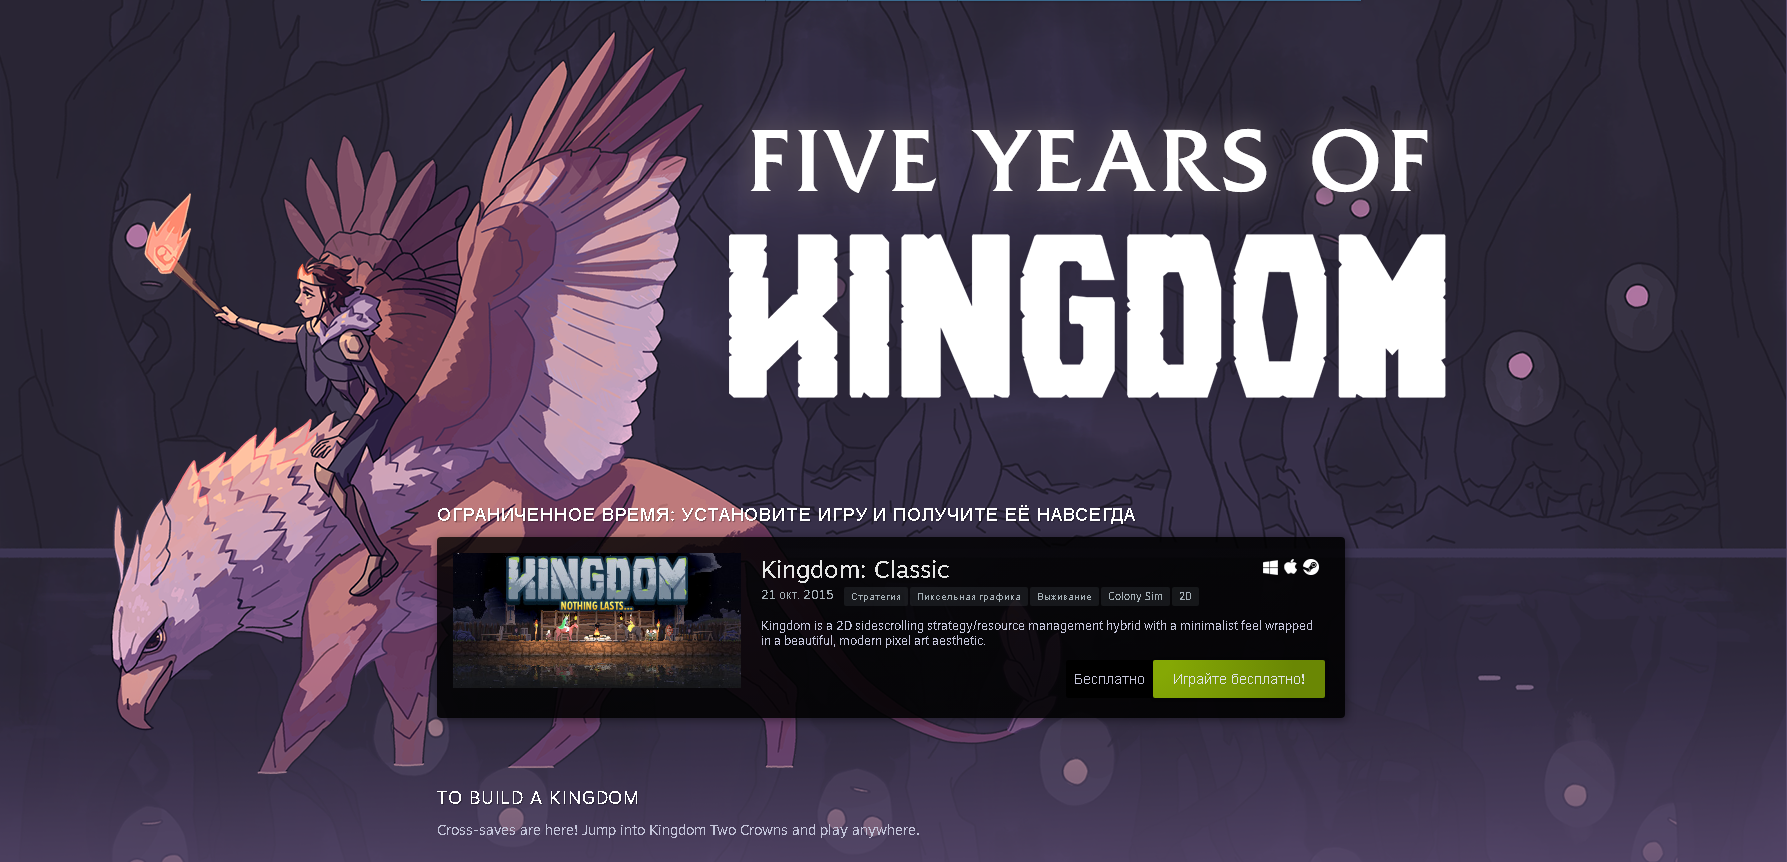 Халява steam. Игра Kingdom Classic. Kingdom Classic 2. Kingdom: Classic рекорд дней. Pikabu Steam.